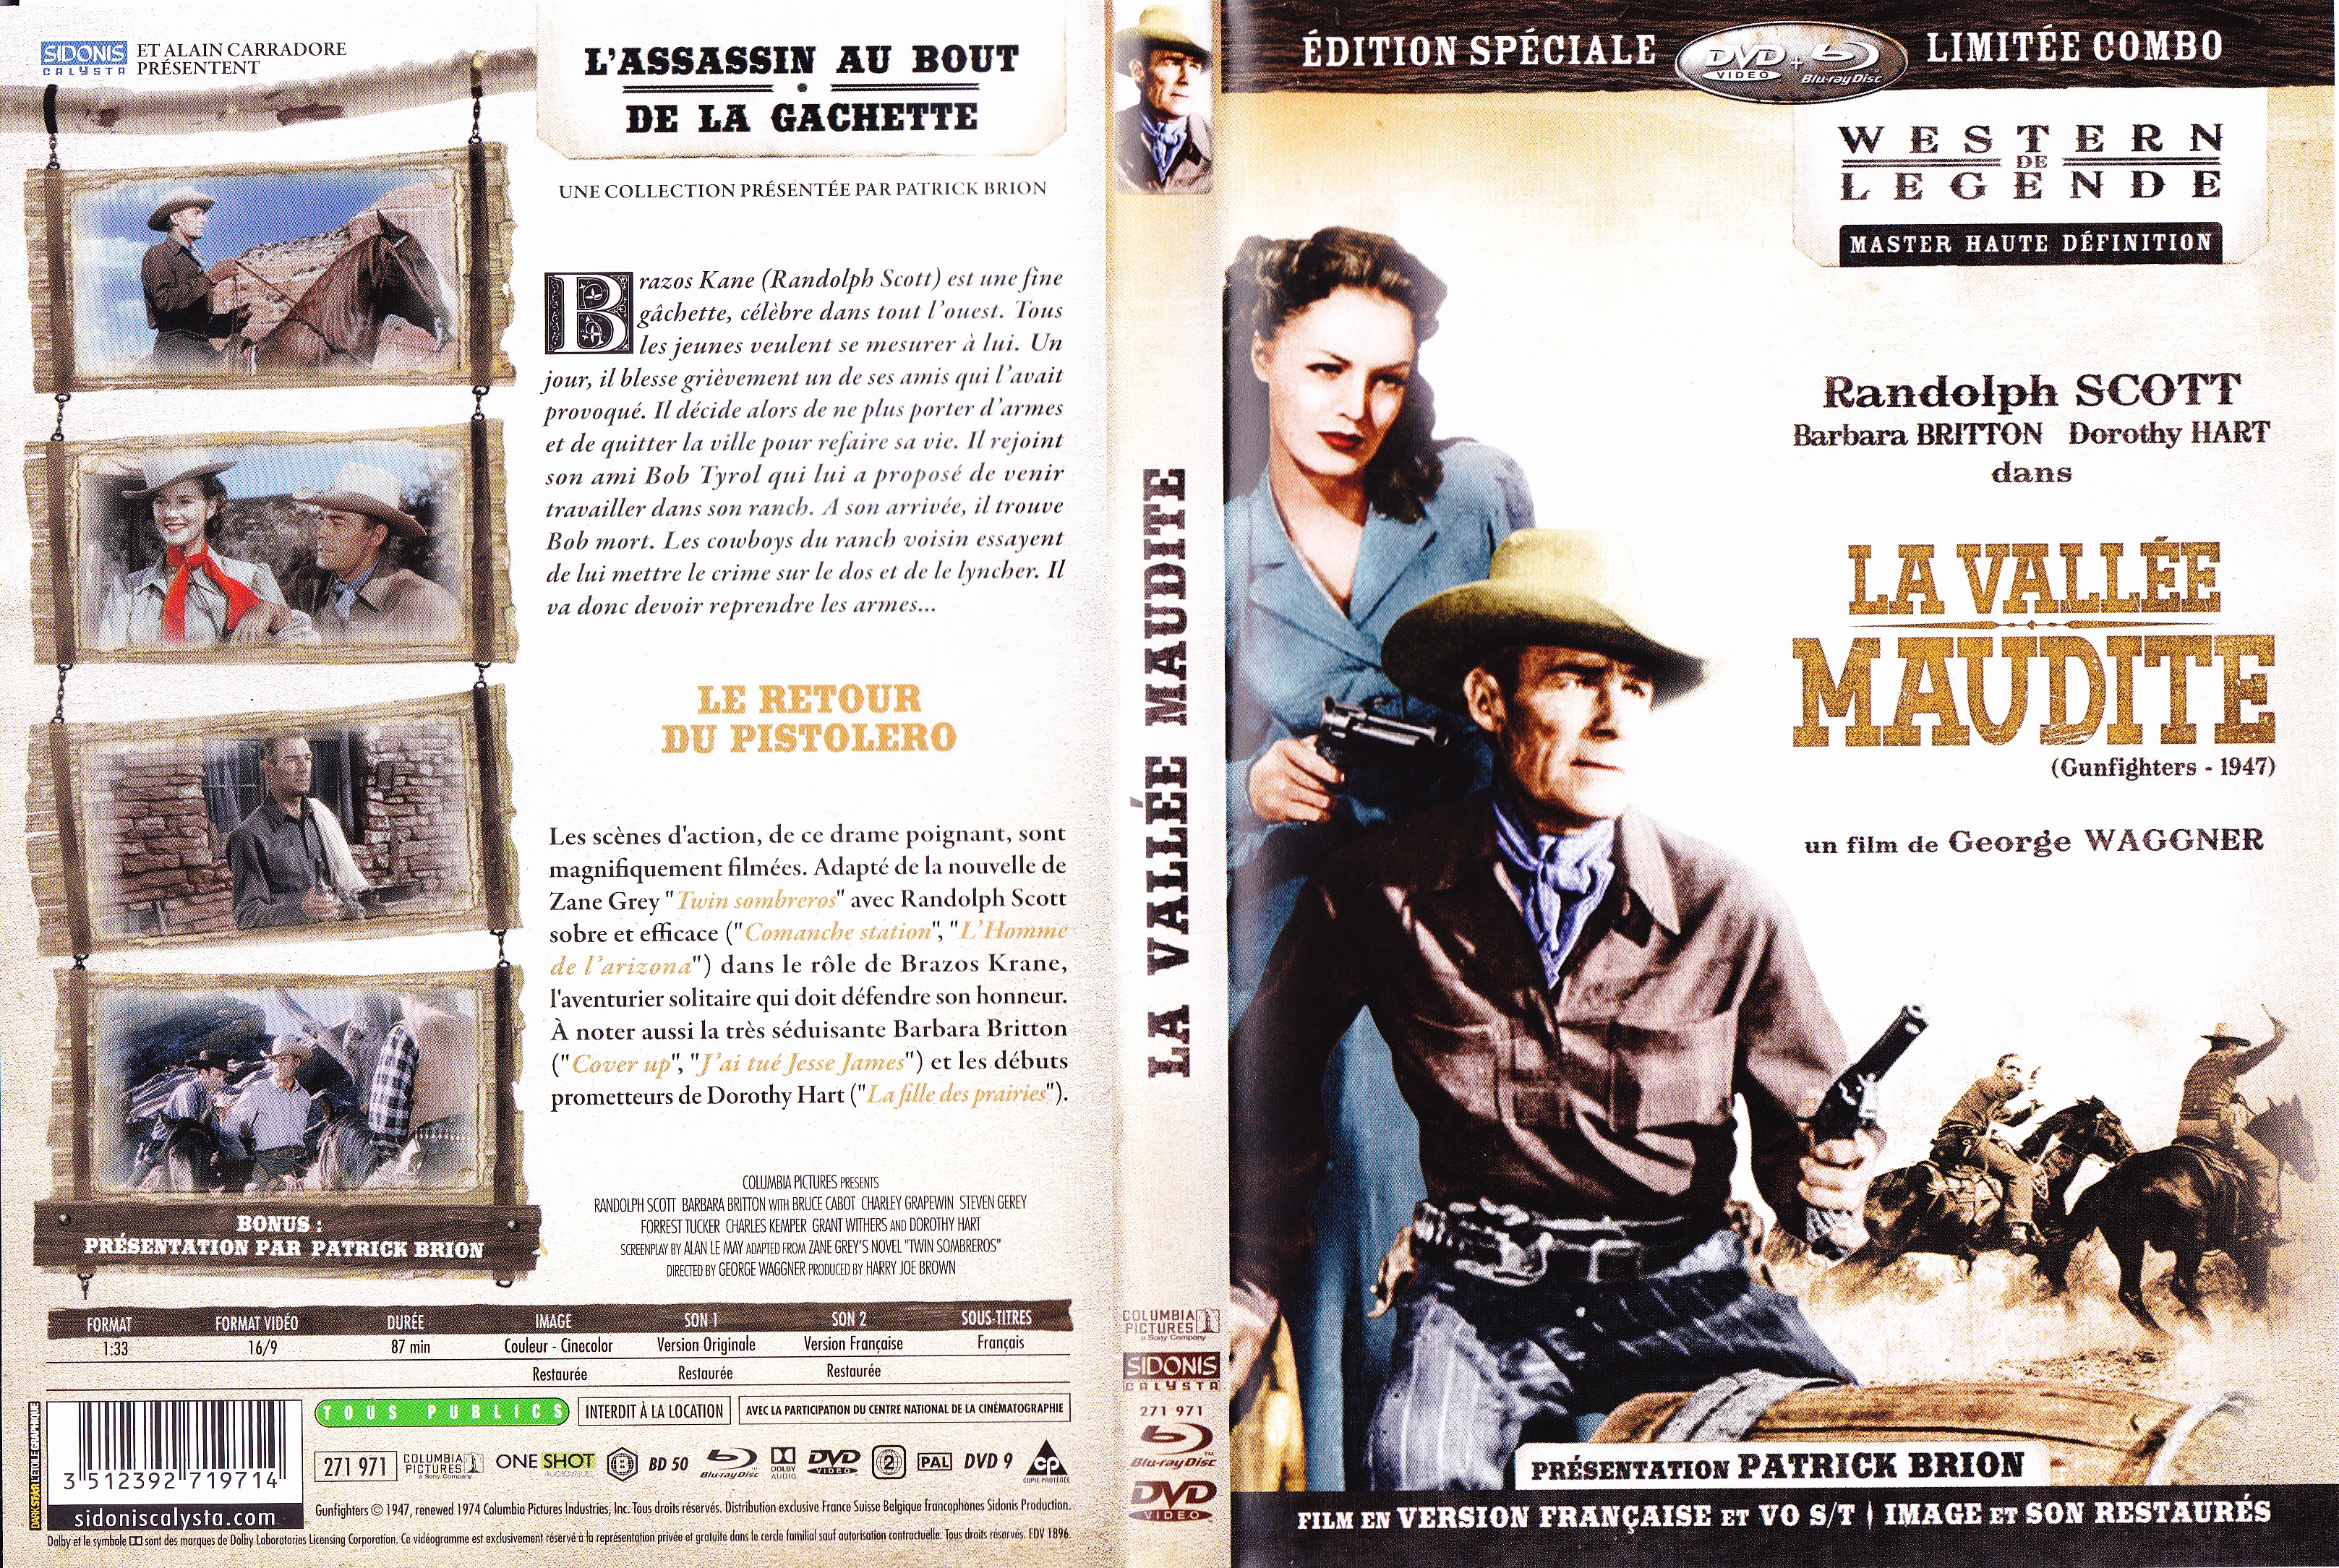 Jaquette DVD La valle maudite (BLU-RAY)